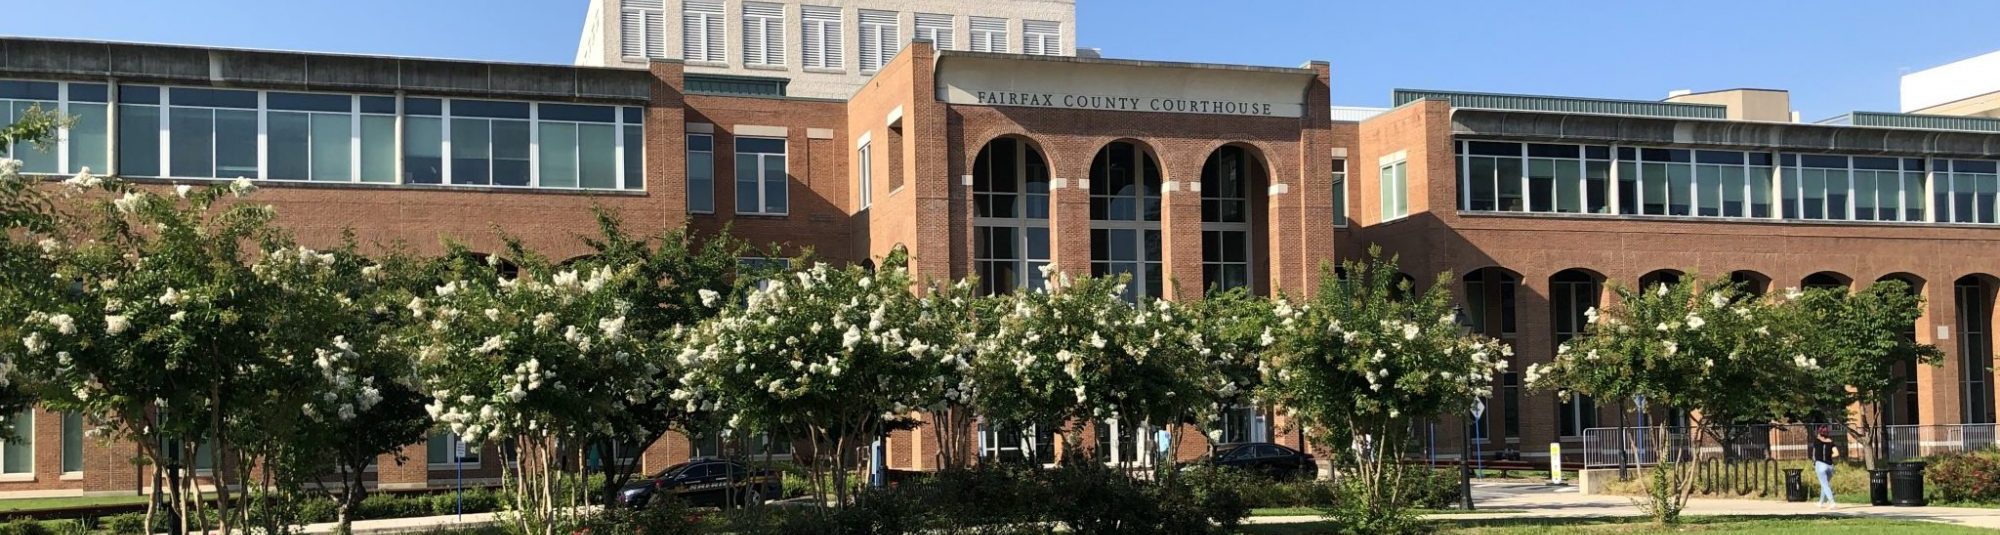 fairfax county court house